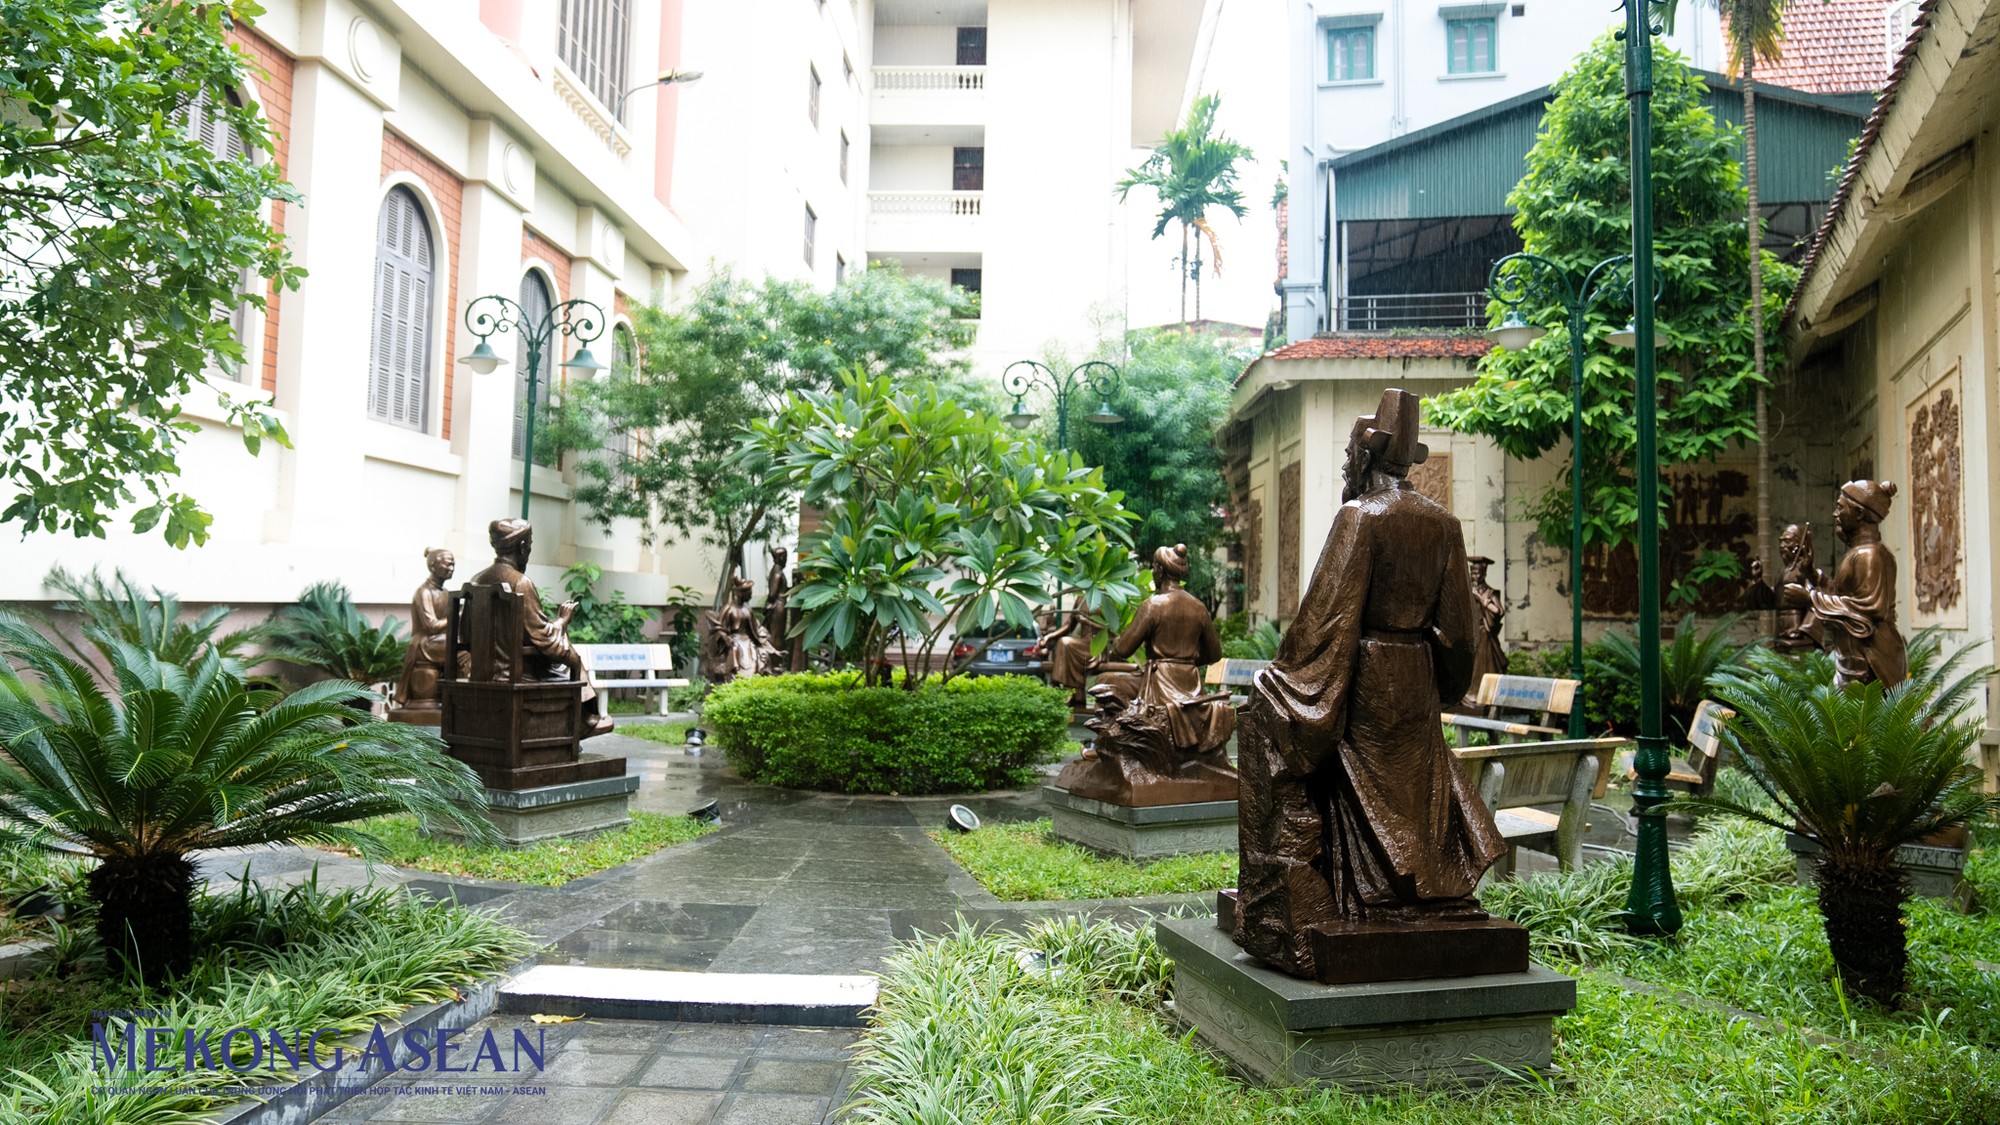 Bảo tàng Văn học Việt Nam còn có một phần trưng bày ngoài trời với các bức phù điêu bằng gốm trang trí và hệ thống 20 tượng danh nhân văn học thời kỳ cổ -trung đại giới thiệu về nền văn học Việt Nam.